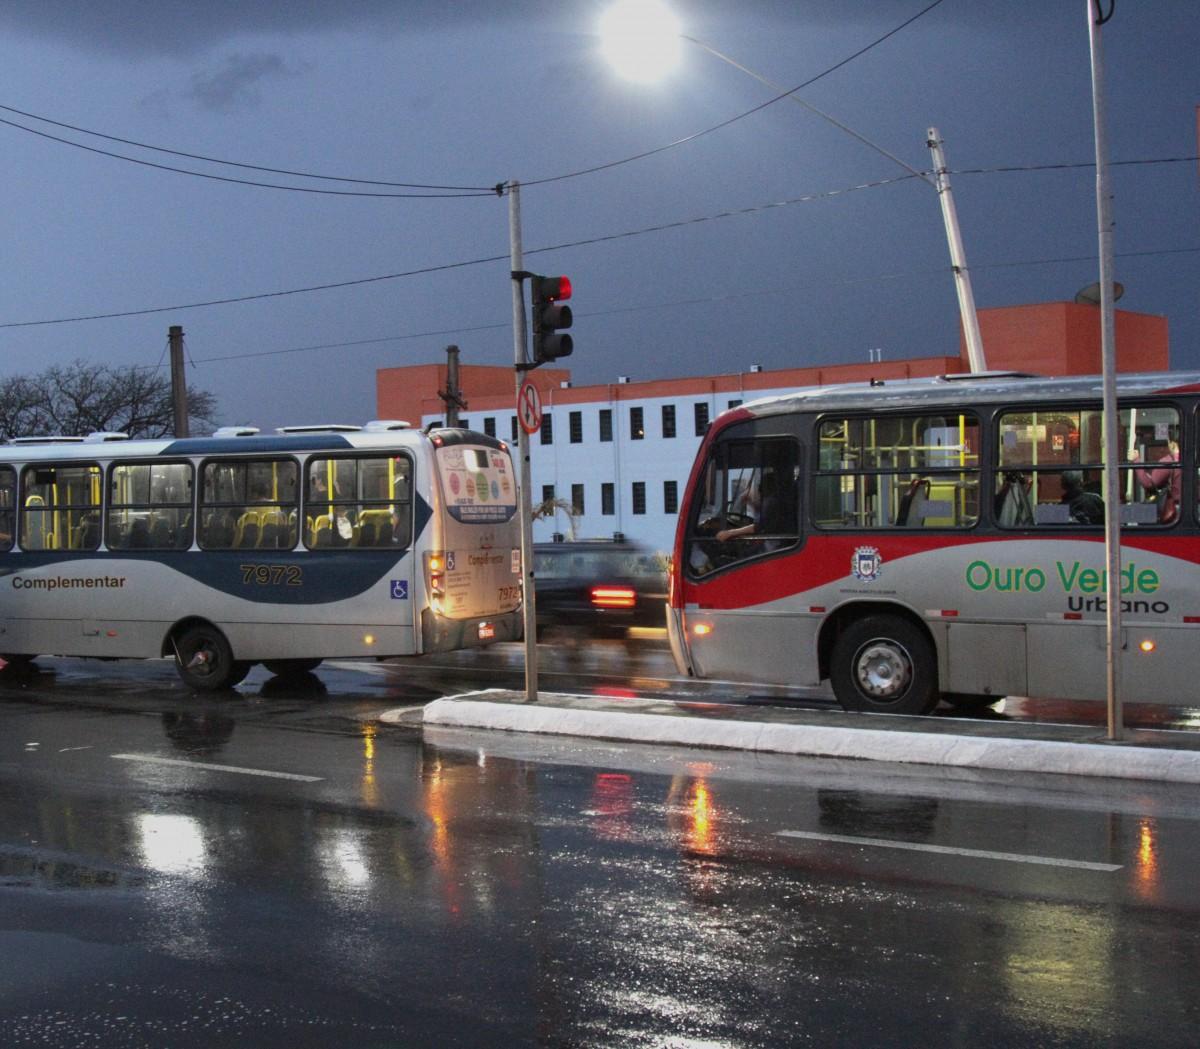 Veículo alternativo circula logo à frente de ônibus do sistema convencional: em 2002 houve até um assassinato em meio aos desentendimentos (Thomaz Marostegan/Especial para a AAN)